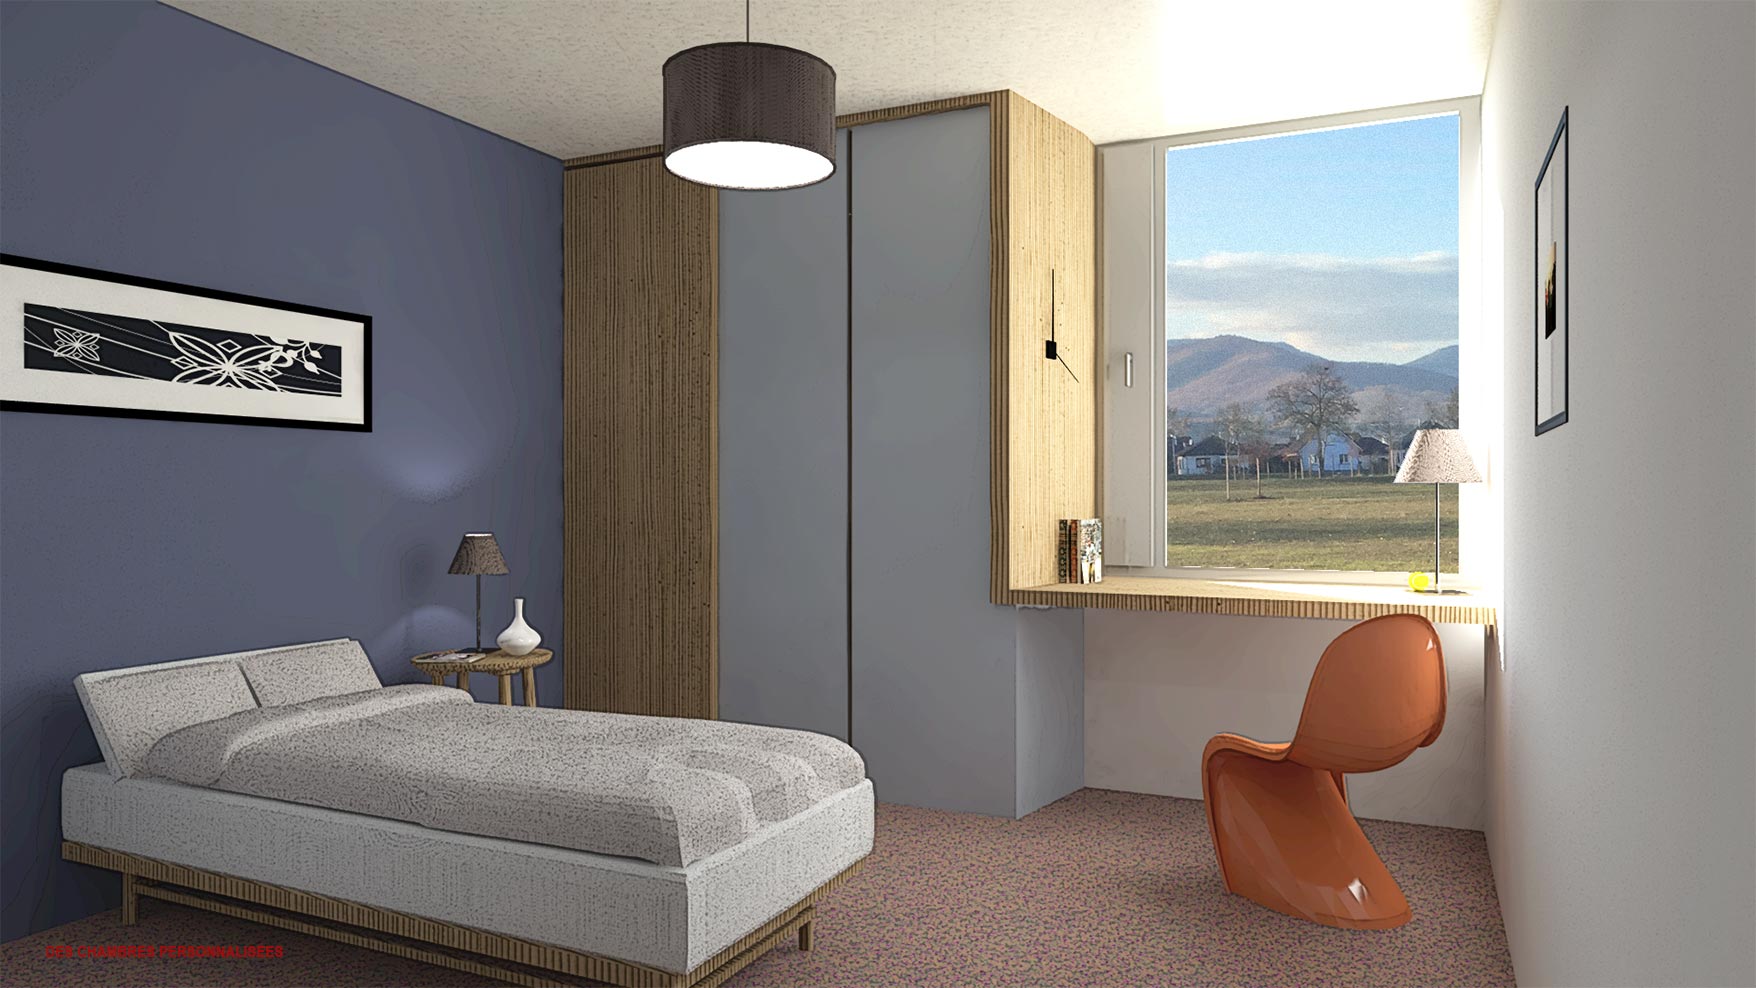 Des chambres personnalisées - Foyer d'accueil spécialisé de 44 lits / Colmar